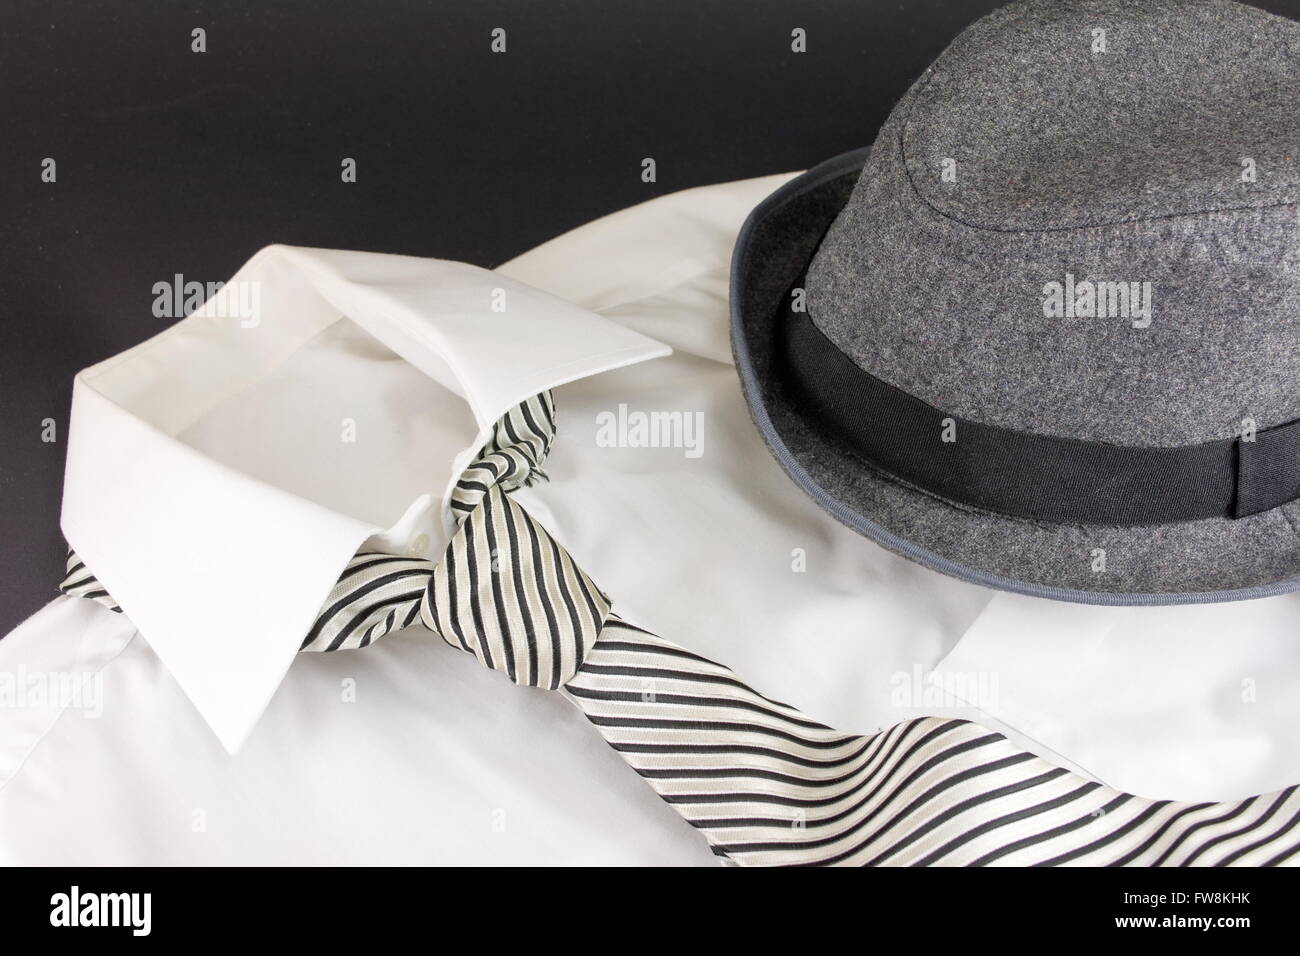 Chapeau noir, cravate blanche, et stipped shirt Banque D'Images